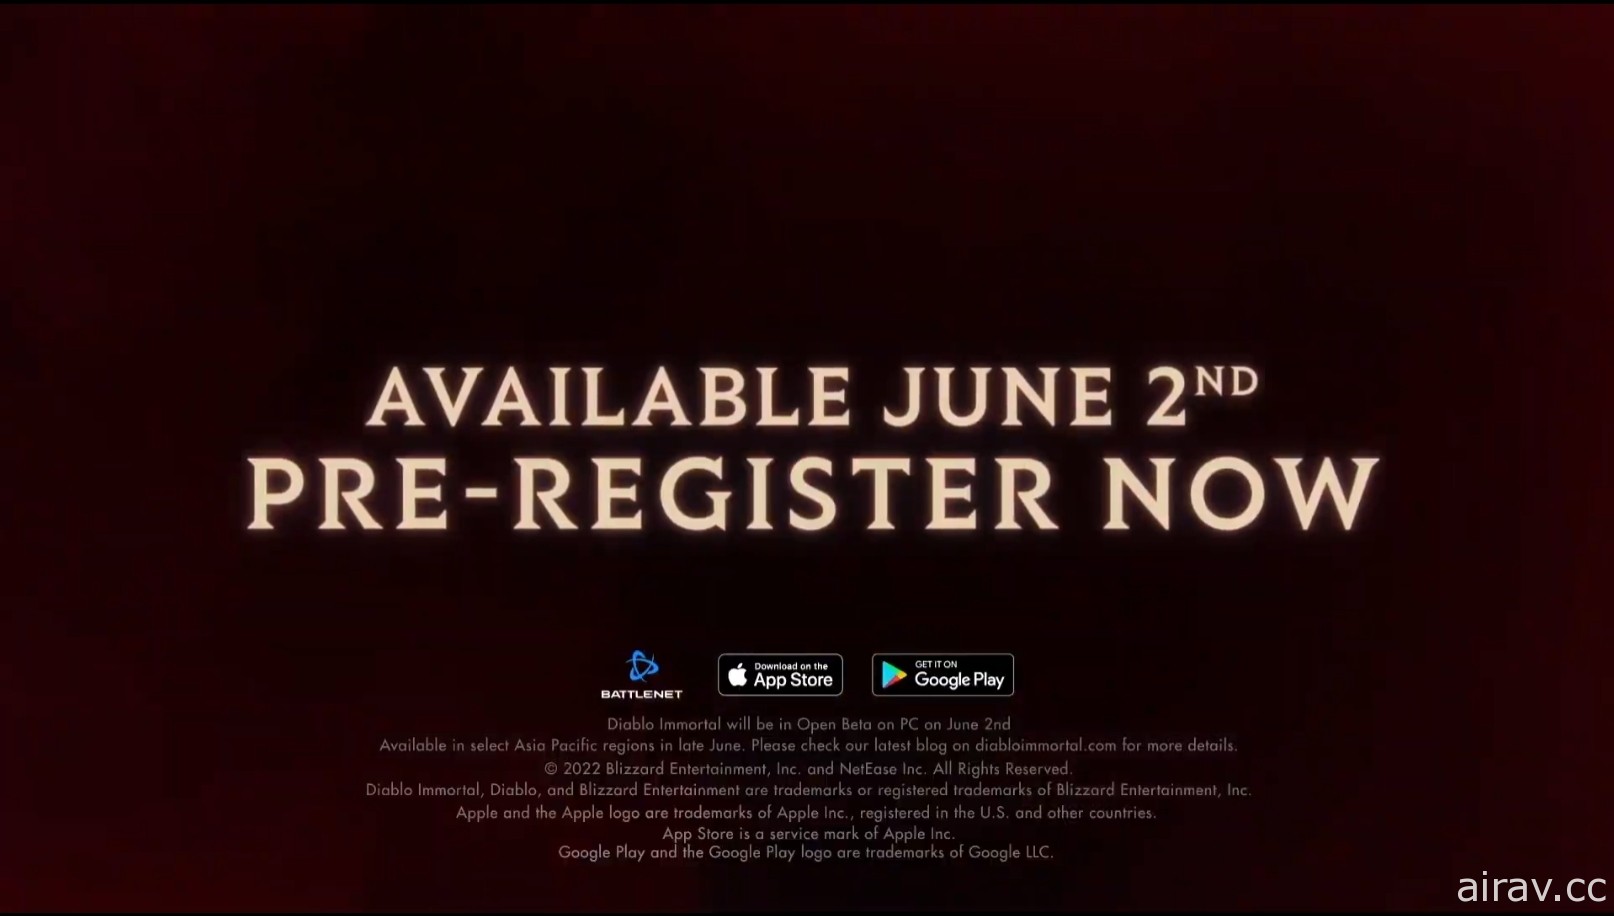 【速报】《暗黑破坏神 永生不朽》预告 6 月下旬于亚太地区推出 公开 PC 版本